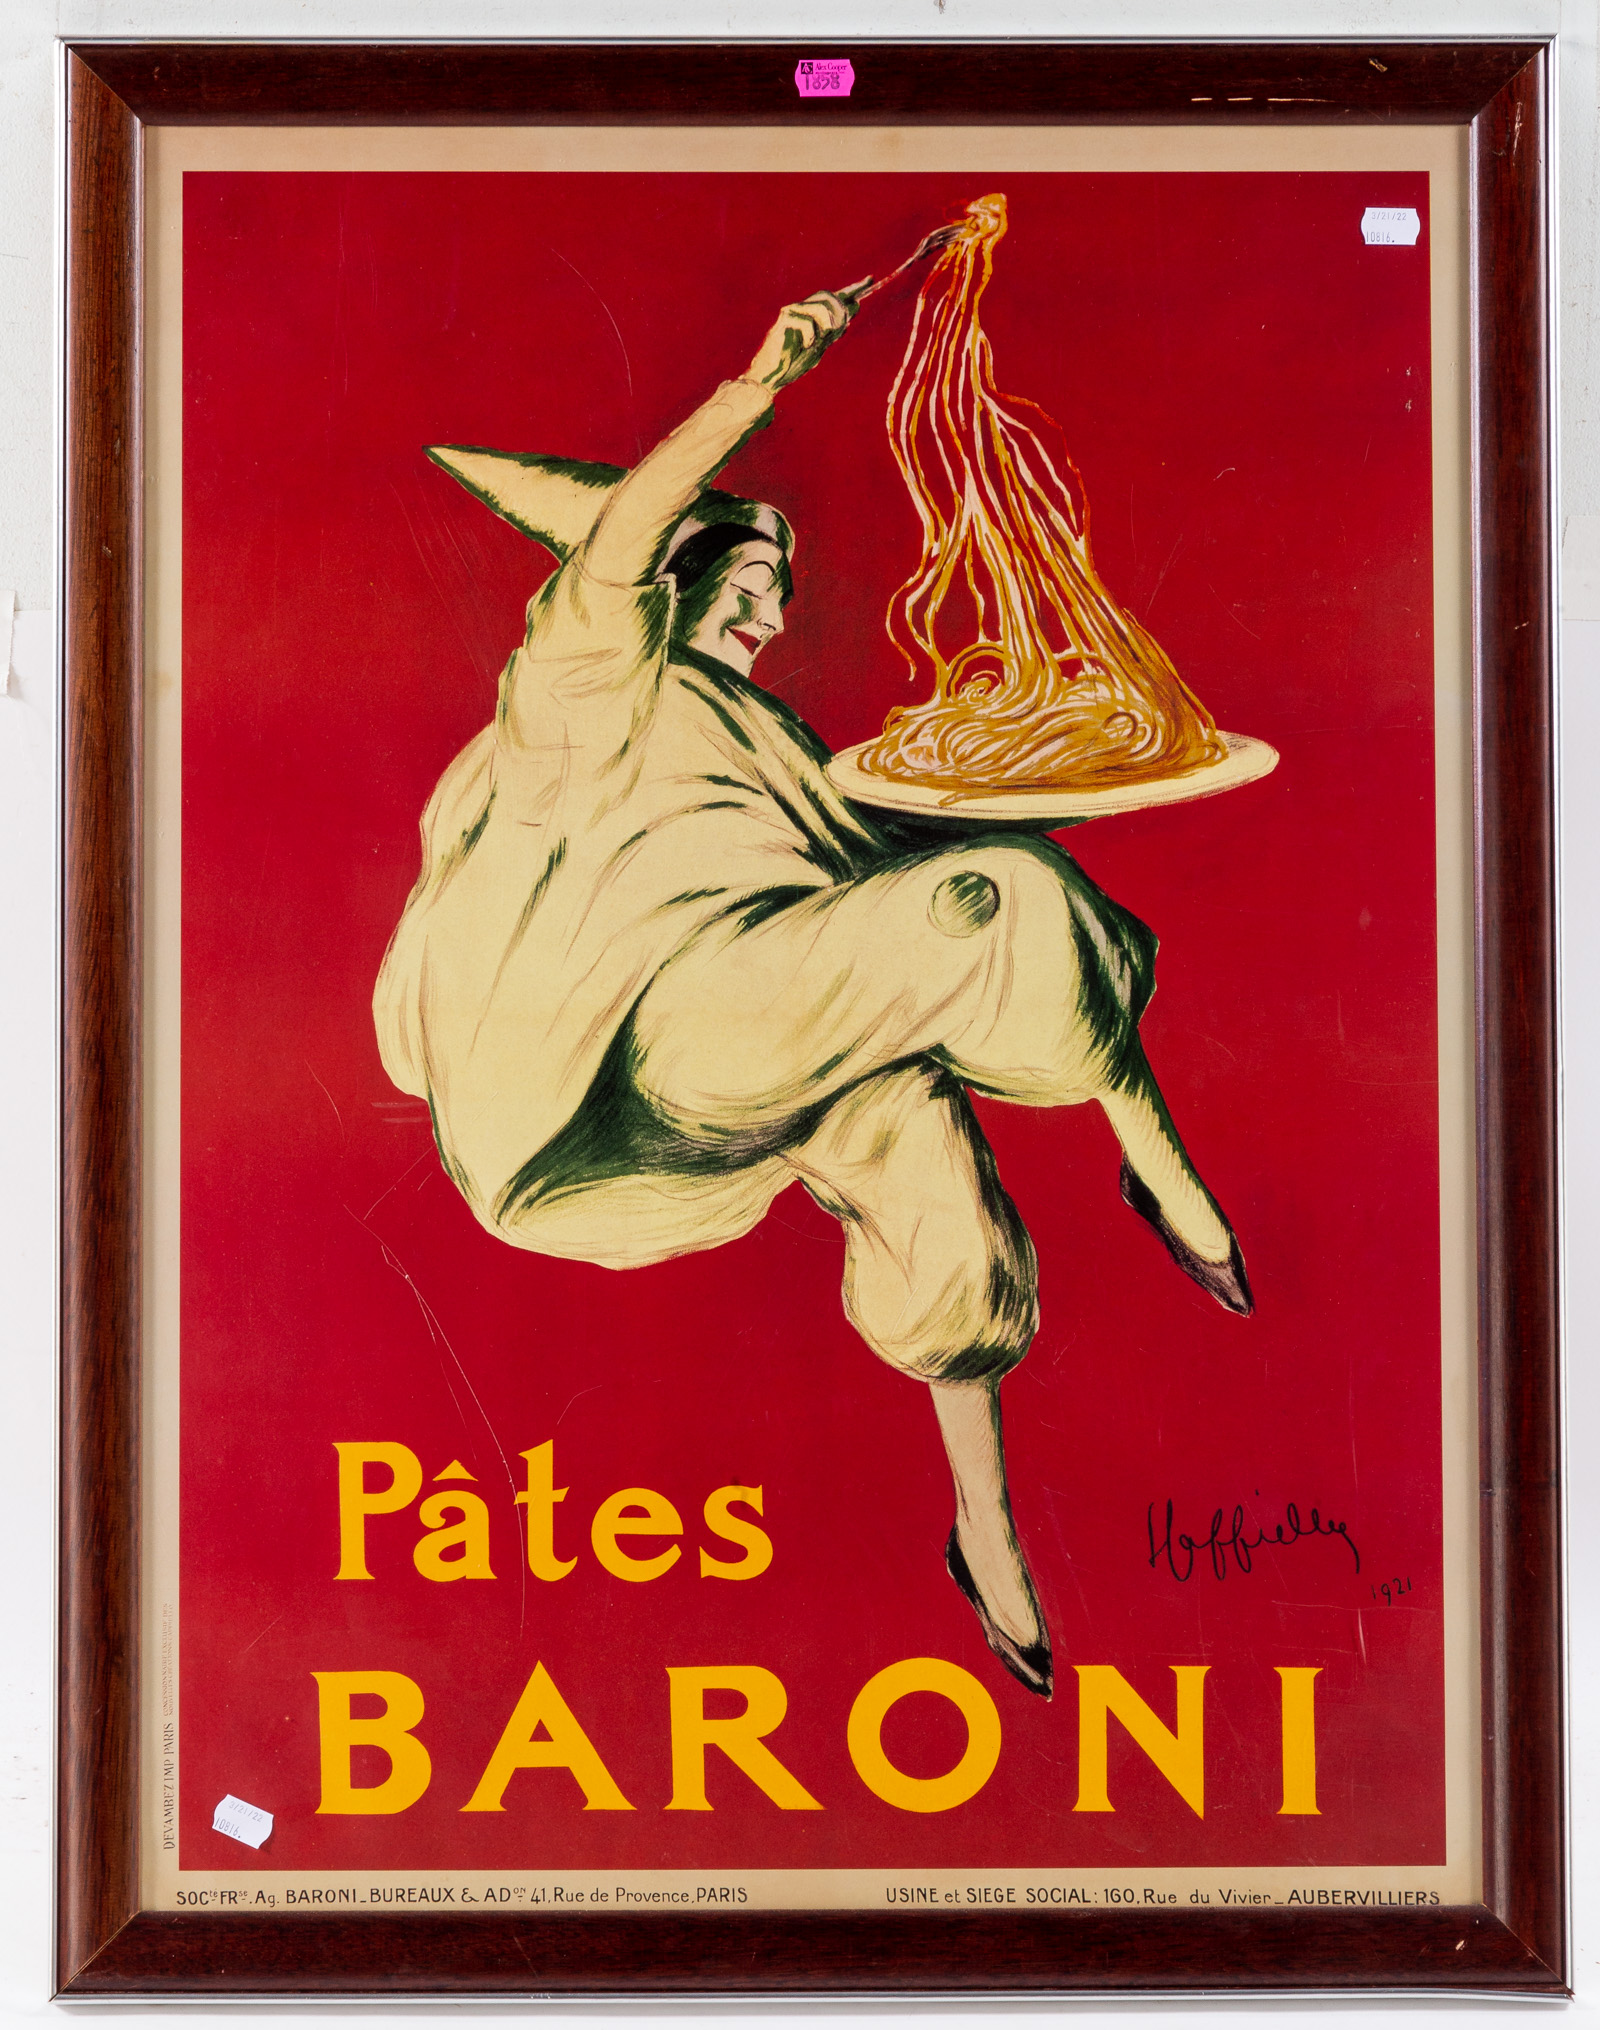 AFTER CAPPIELLO. "PATES BARONI,"